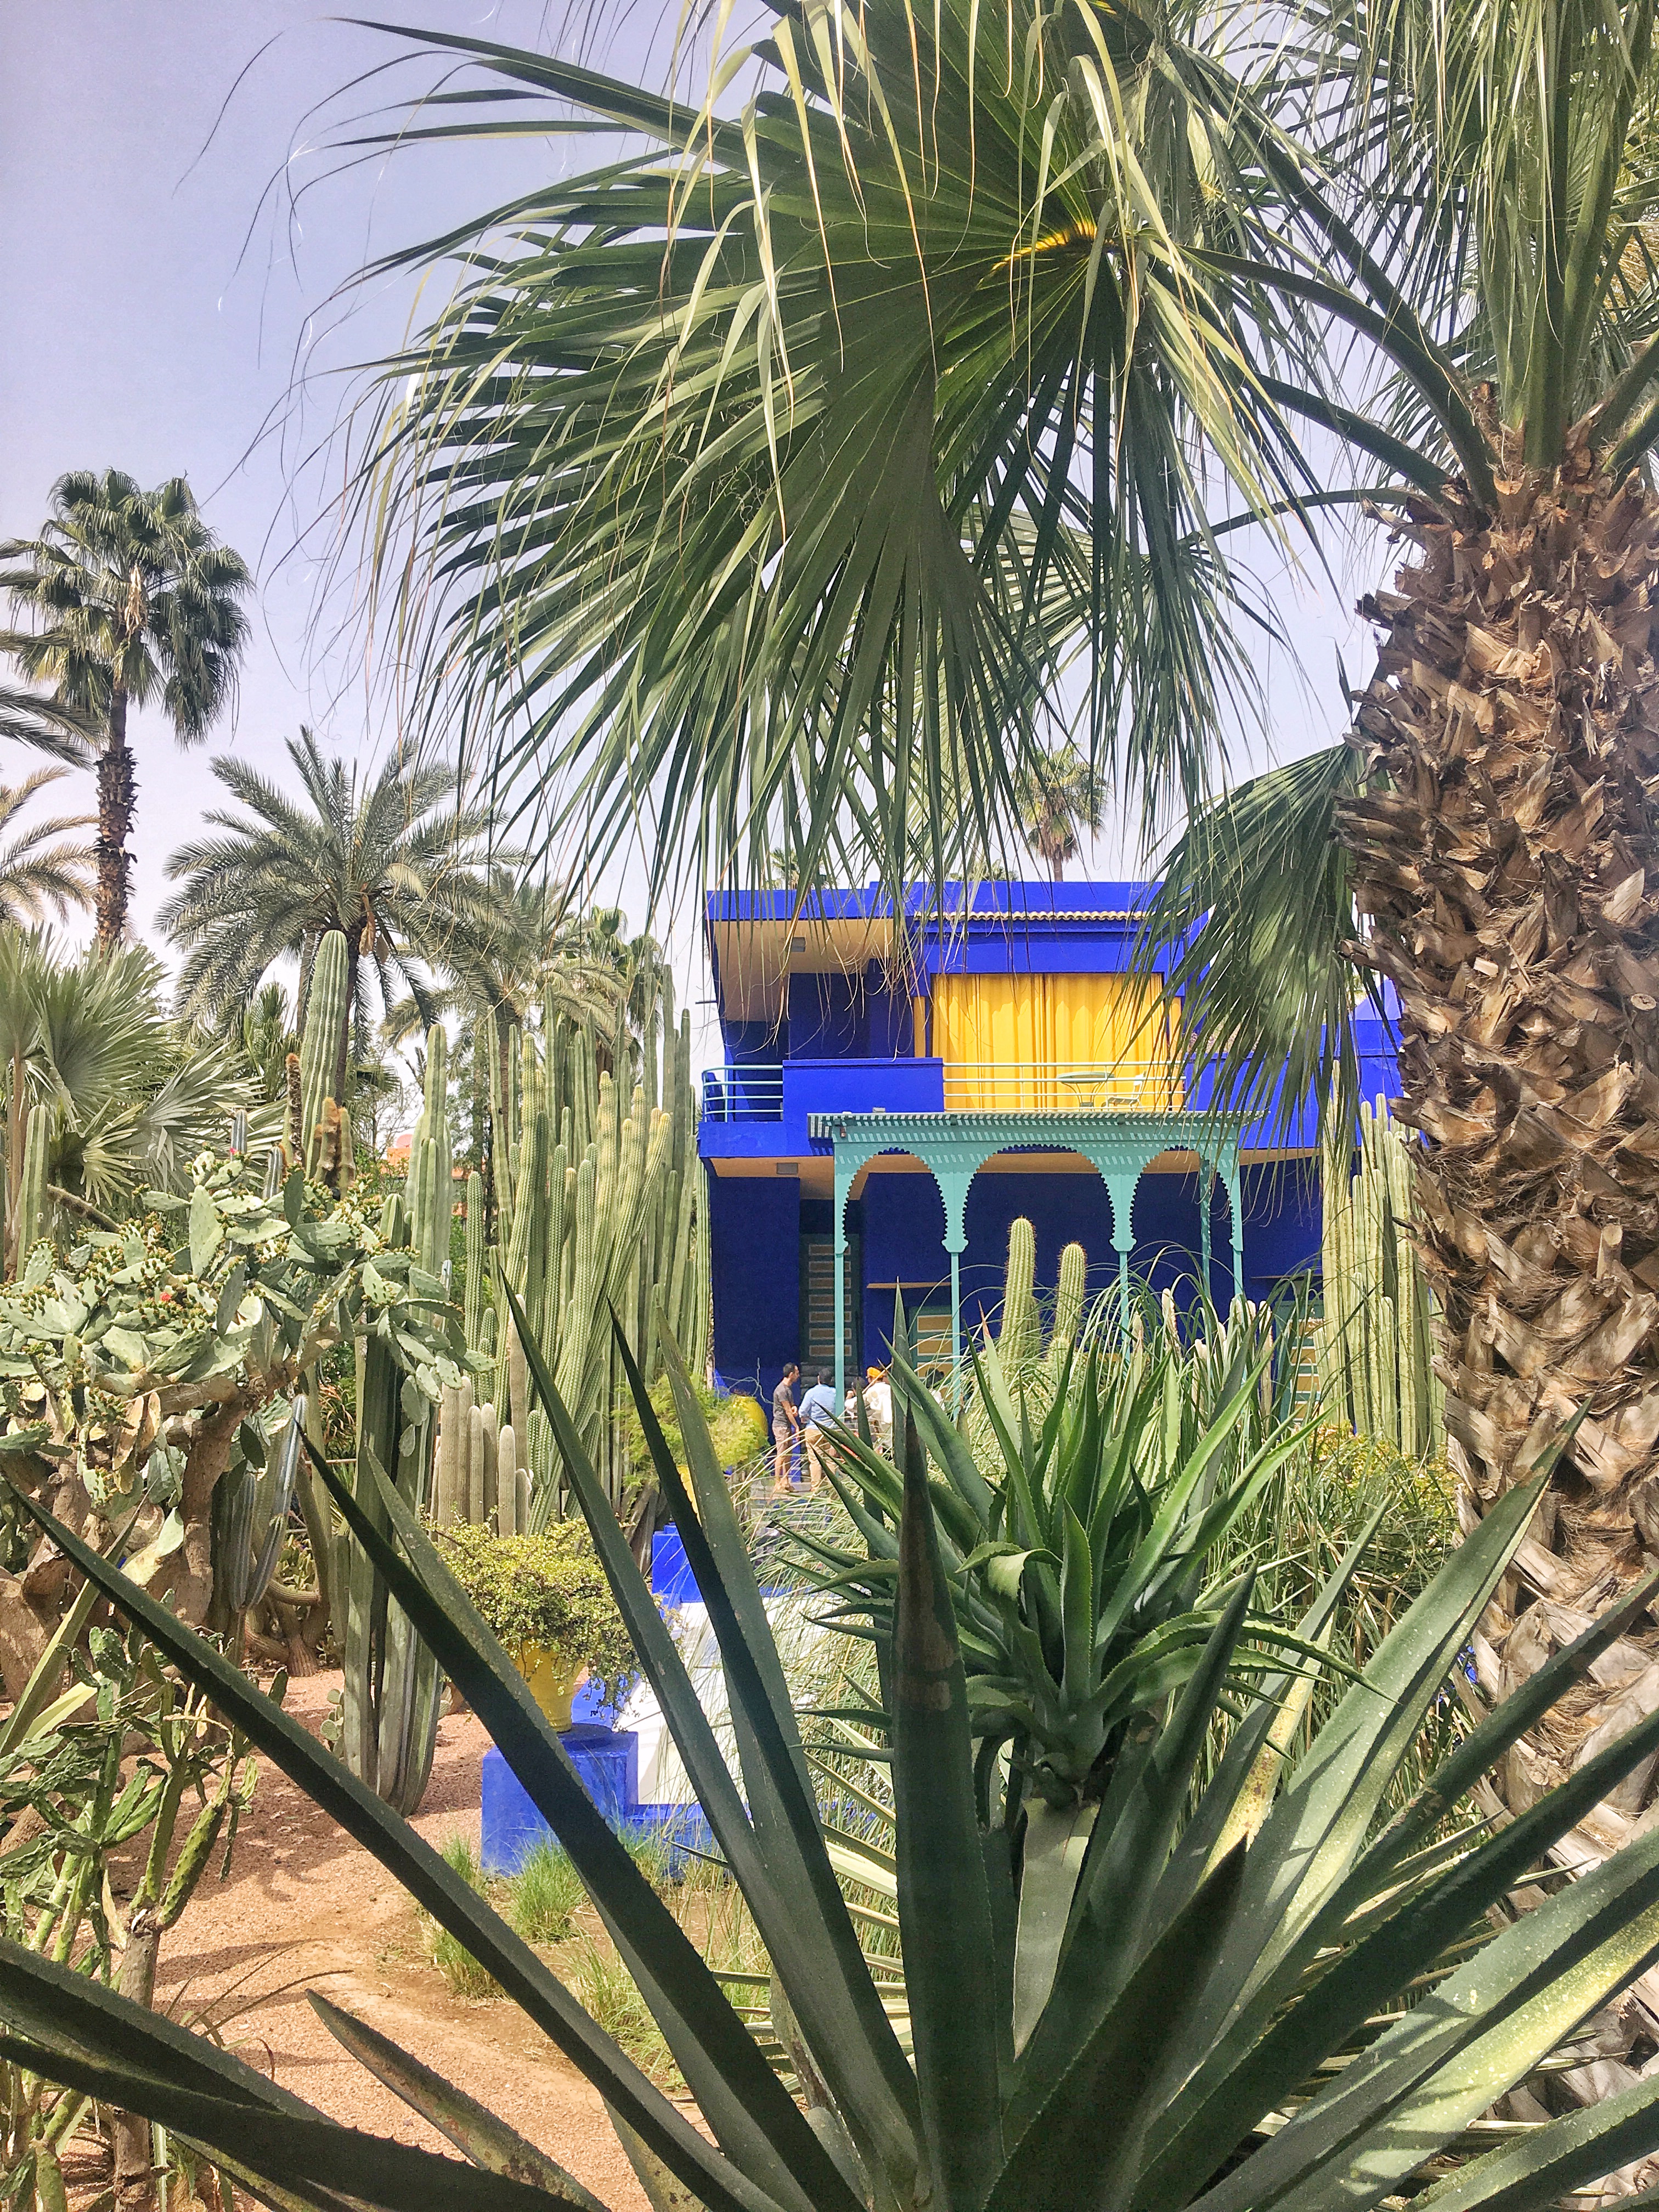 Jardin Marjorelle in Marrakech